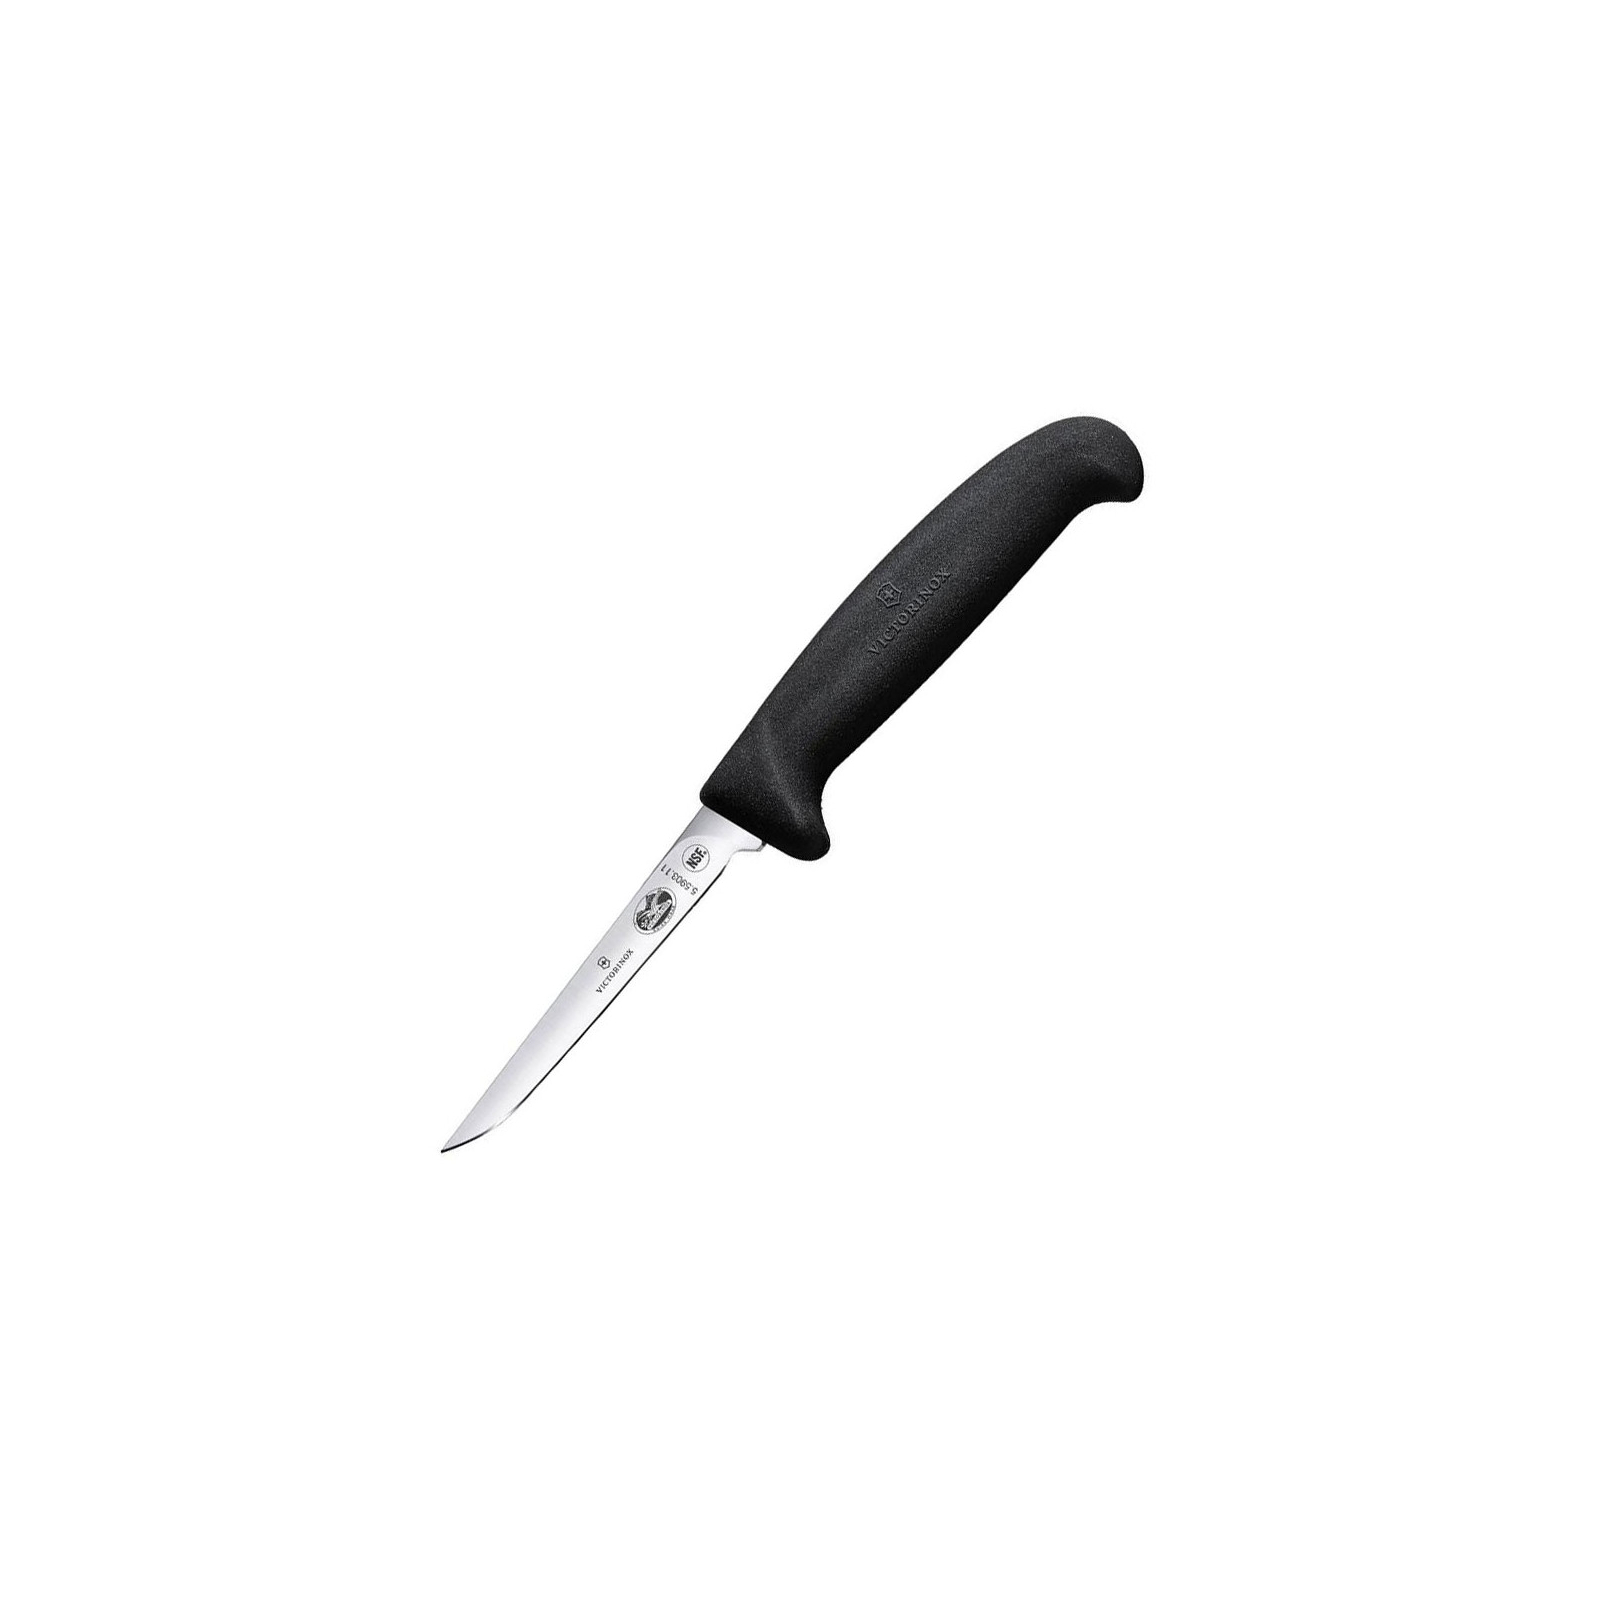 Кухонный нож Victorinox Fibrox Poultry 11см Black (5.5903.11) изображение 2